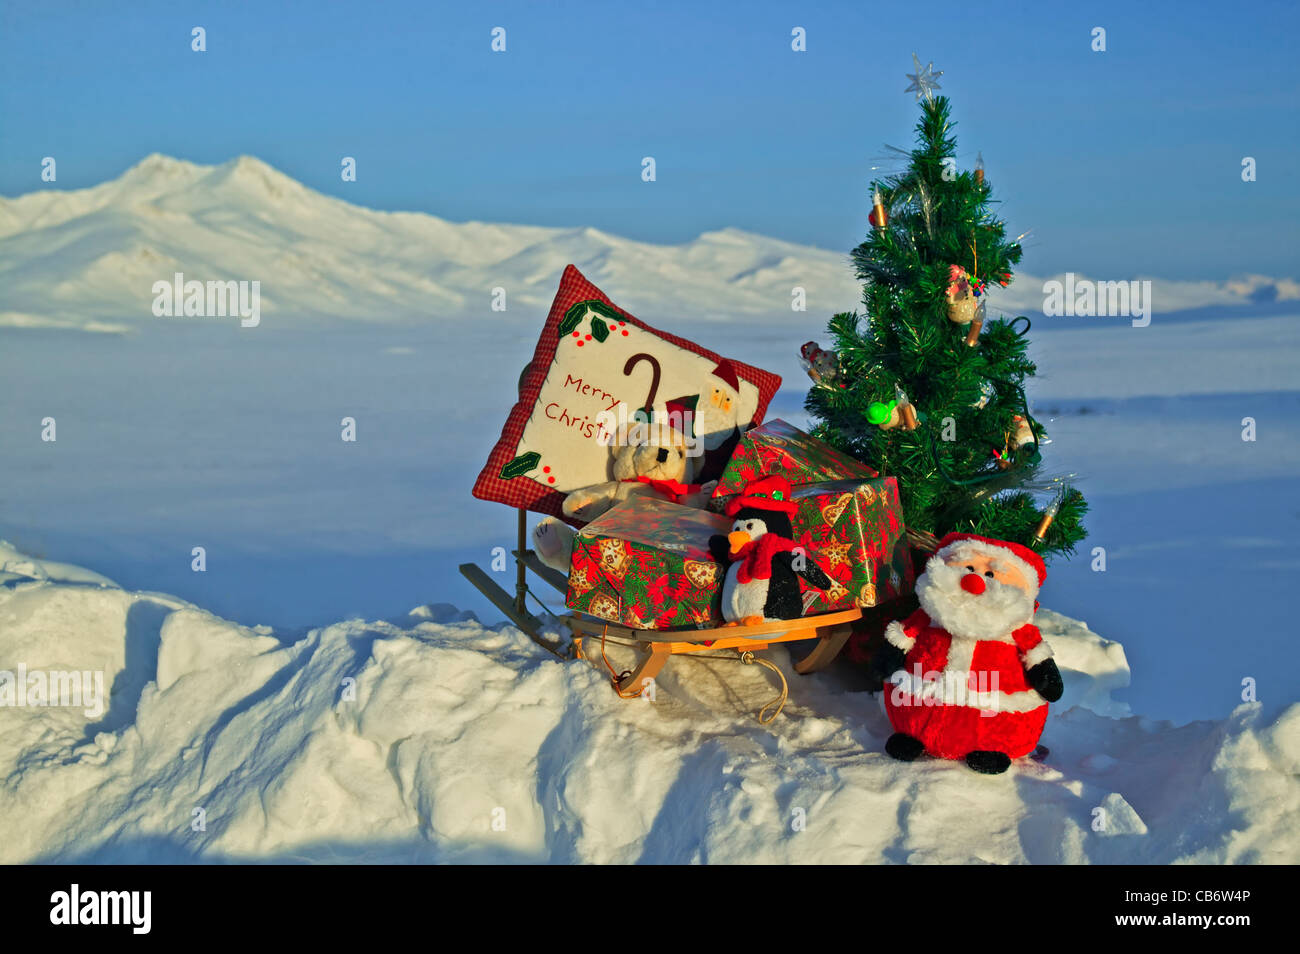 Scena di Natale nel paesaggio invernale con un albero decorato e Santa Claus, fotografato in alta arctic di Alaska, Stati Uniti d'America. Foto Stock